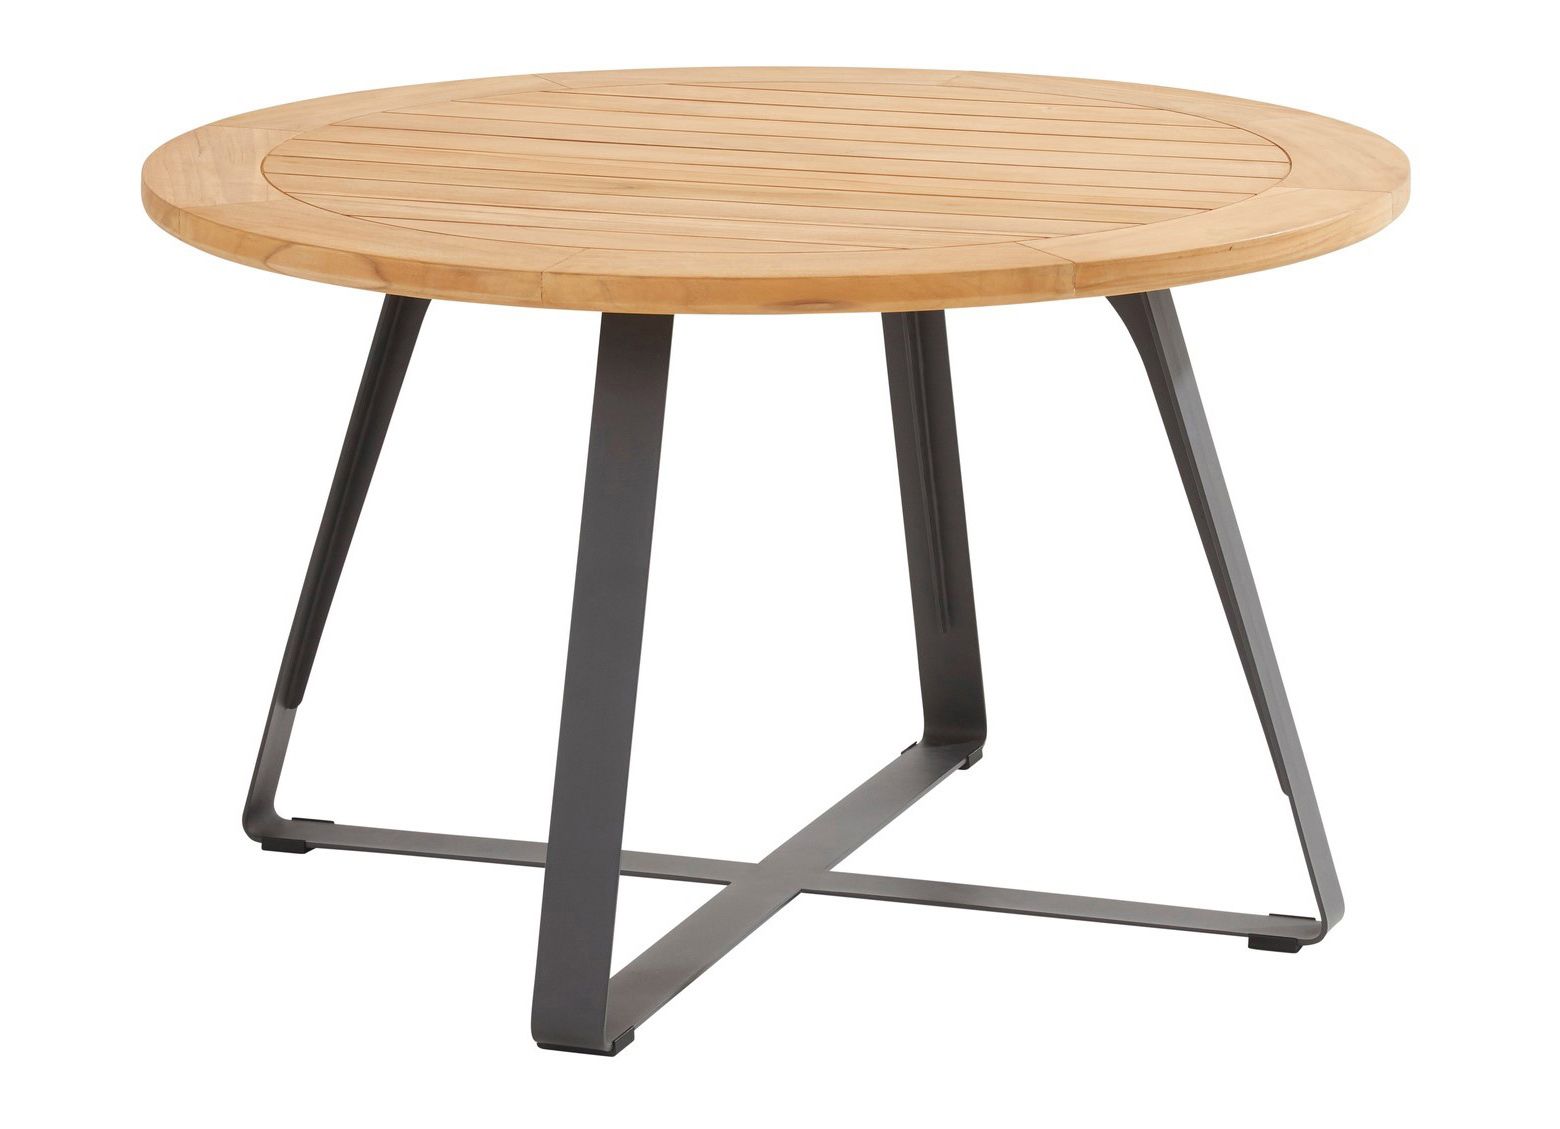 4Seasons Outdoor designové zahradní stoly Basso Table Round (průměr 130 cm) - DESIGNPROPAGANDA